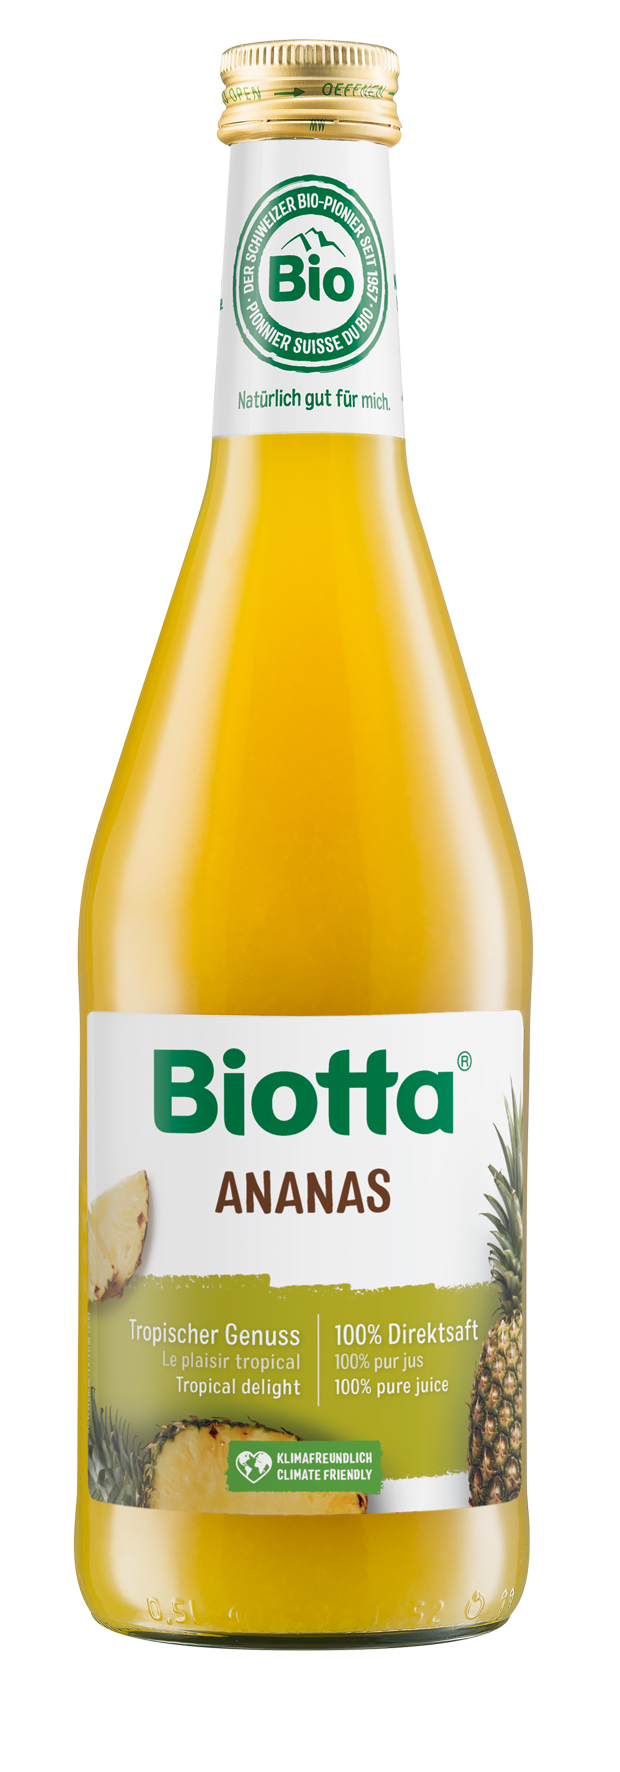 Biotta Ananassap bio 500ml